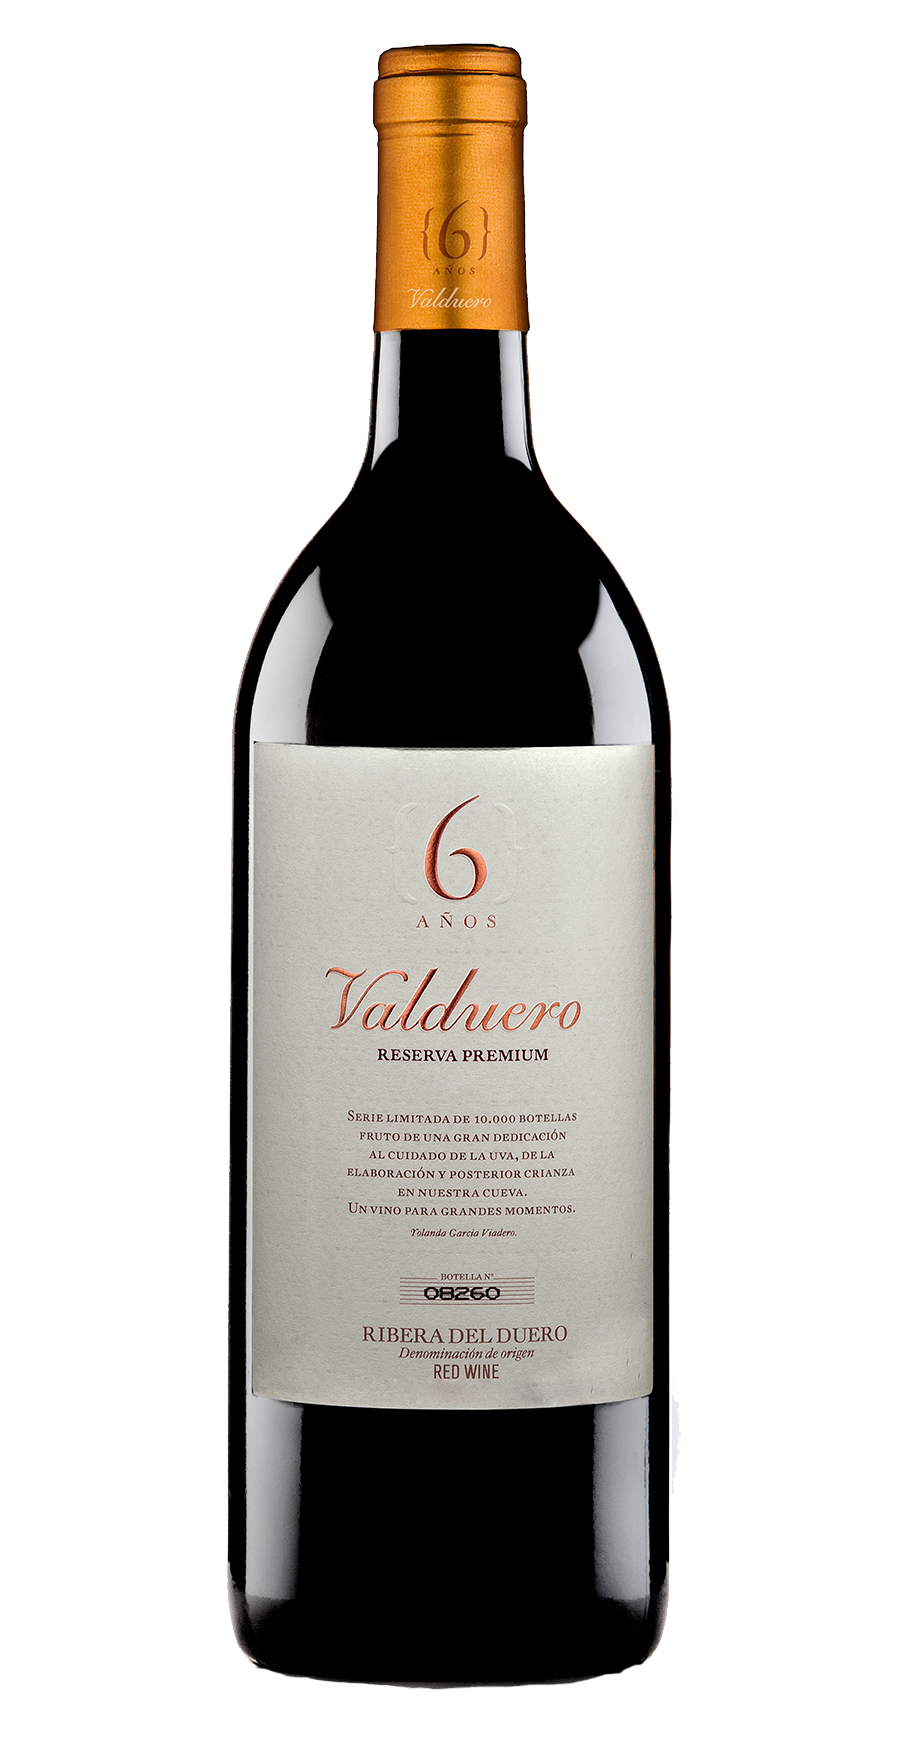 Landolt - Valduero 6Años Reserva Premium